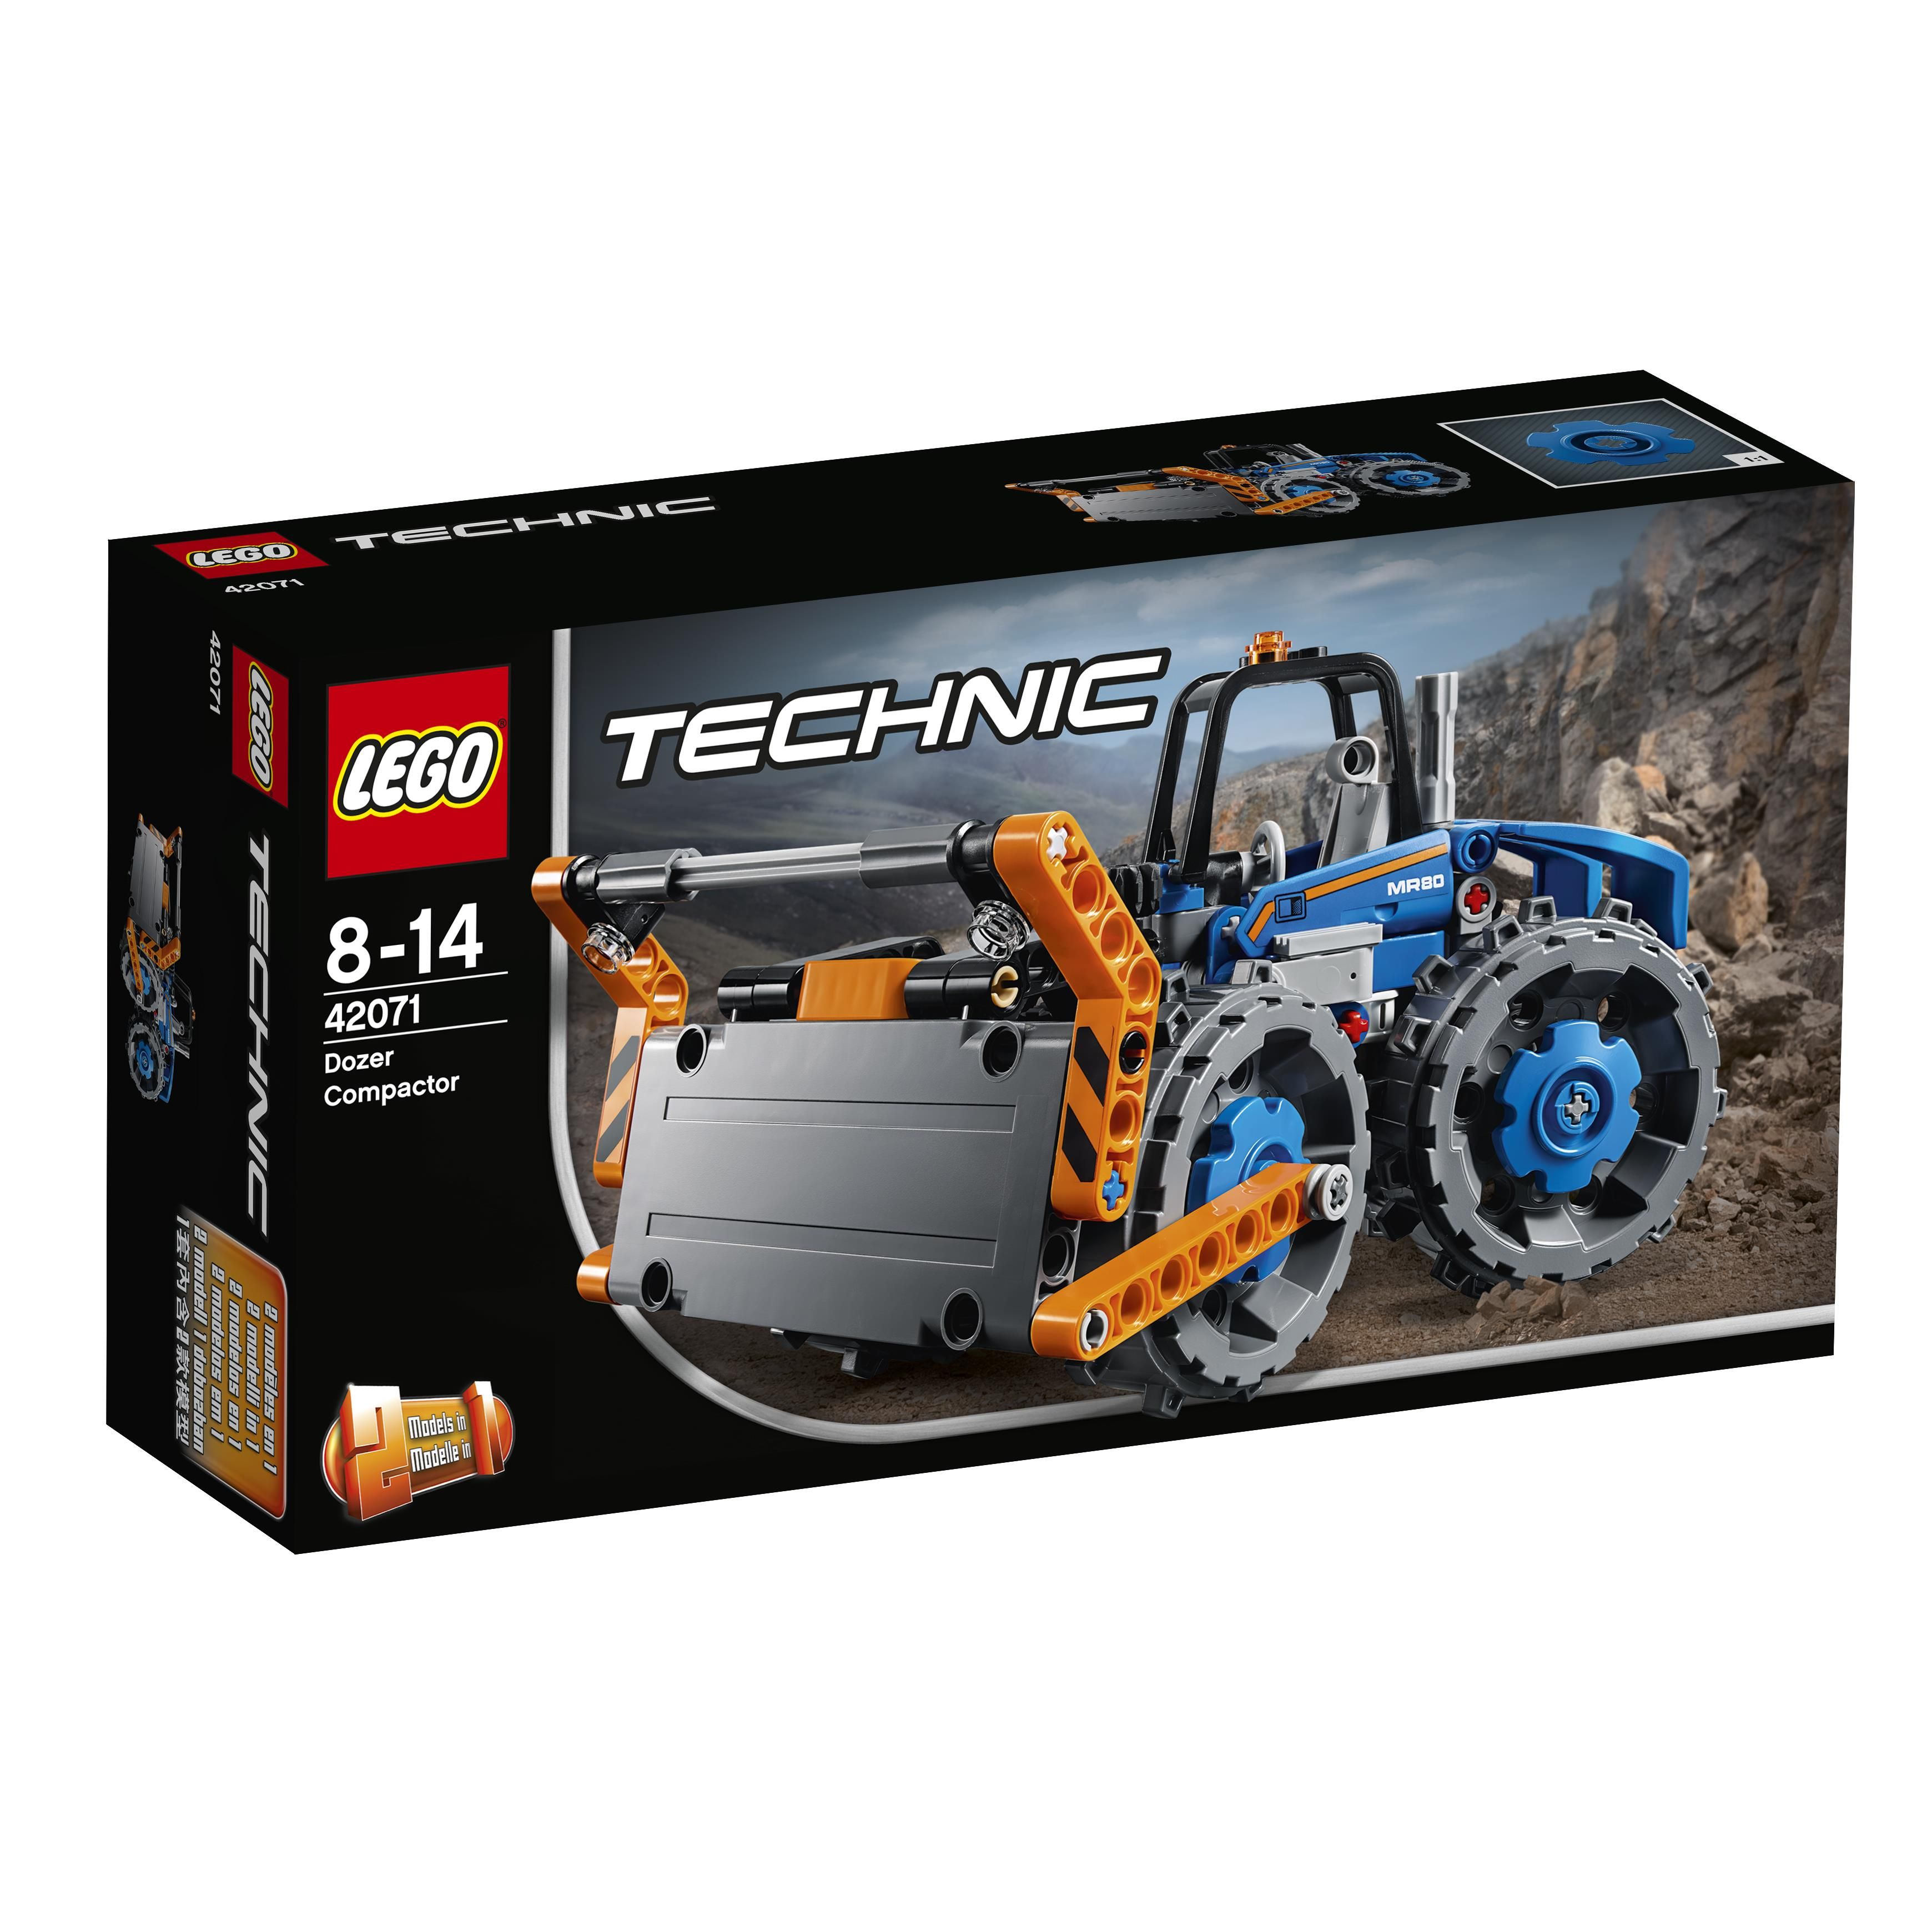 LEGO Technic Ruspa Compattatrice